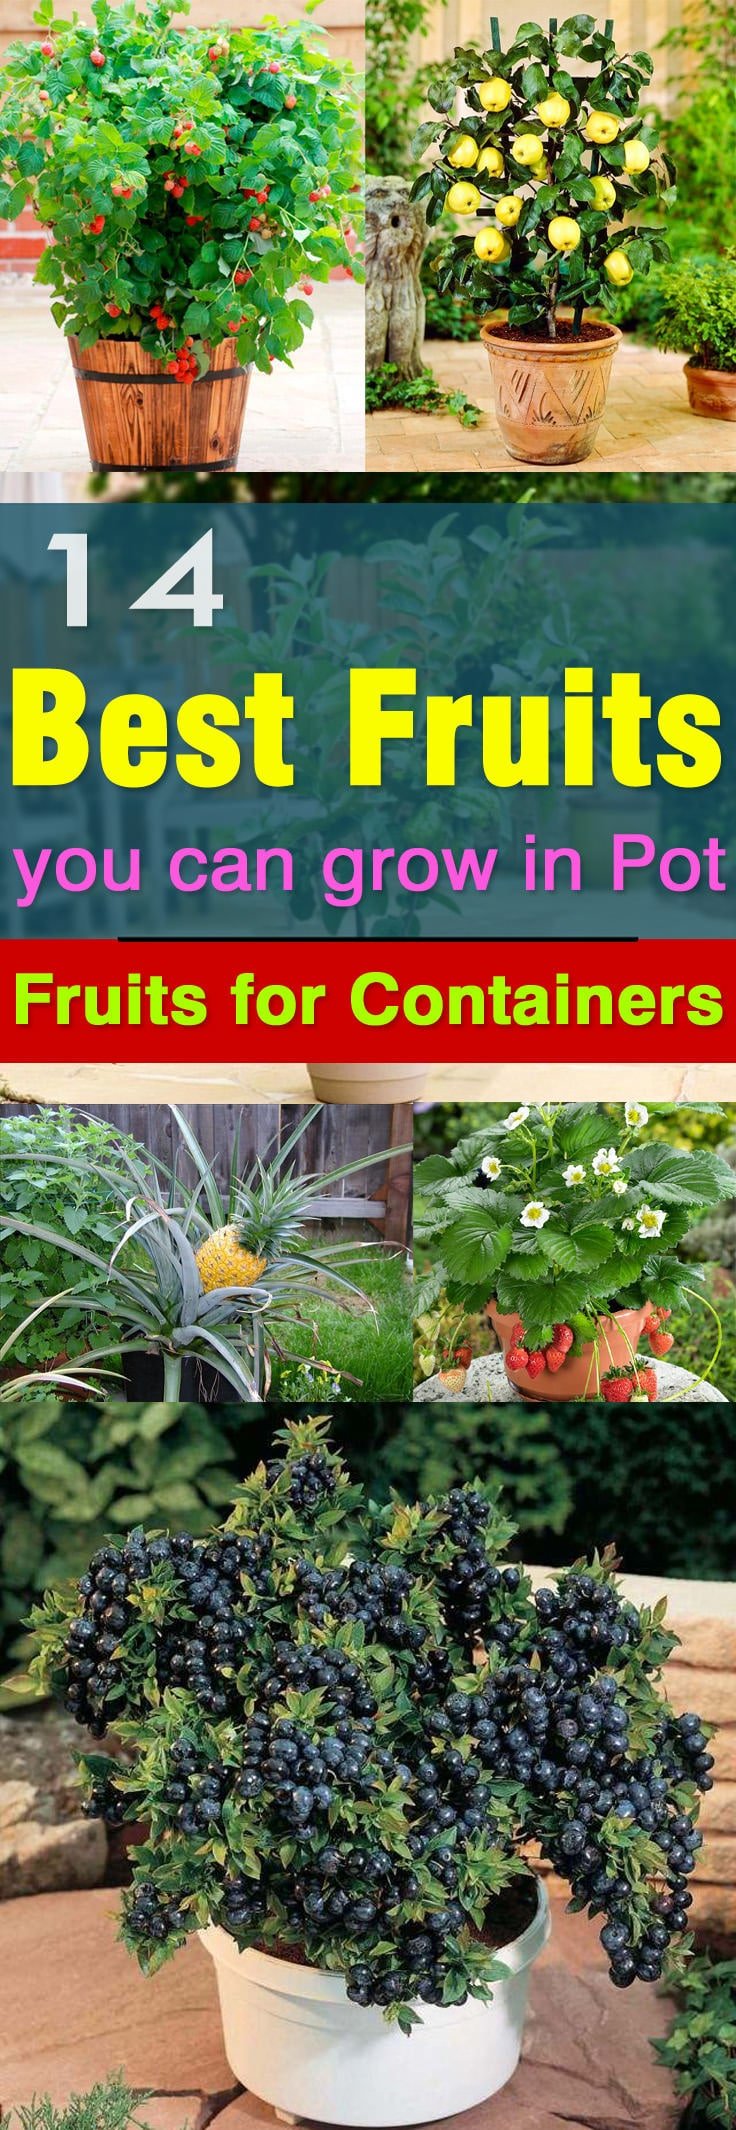 Όχι μόνο λαχανικά, αλλά και φρούτα μπορούν να φυτευτούν σε γλάστρες.  Εδώ είναι 14 από τα καλύτερα φρούτα για καλλιέργεια σε δοχεία.